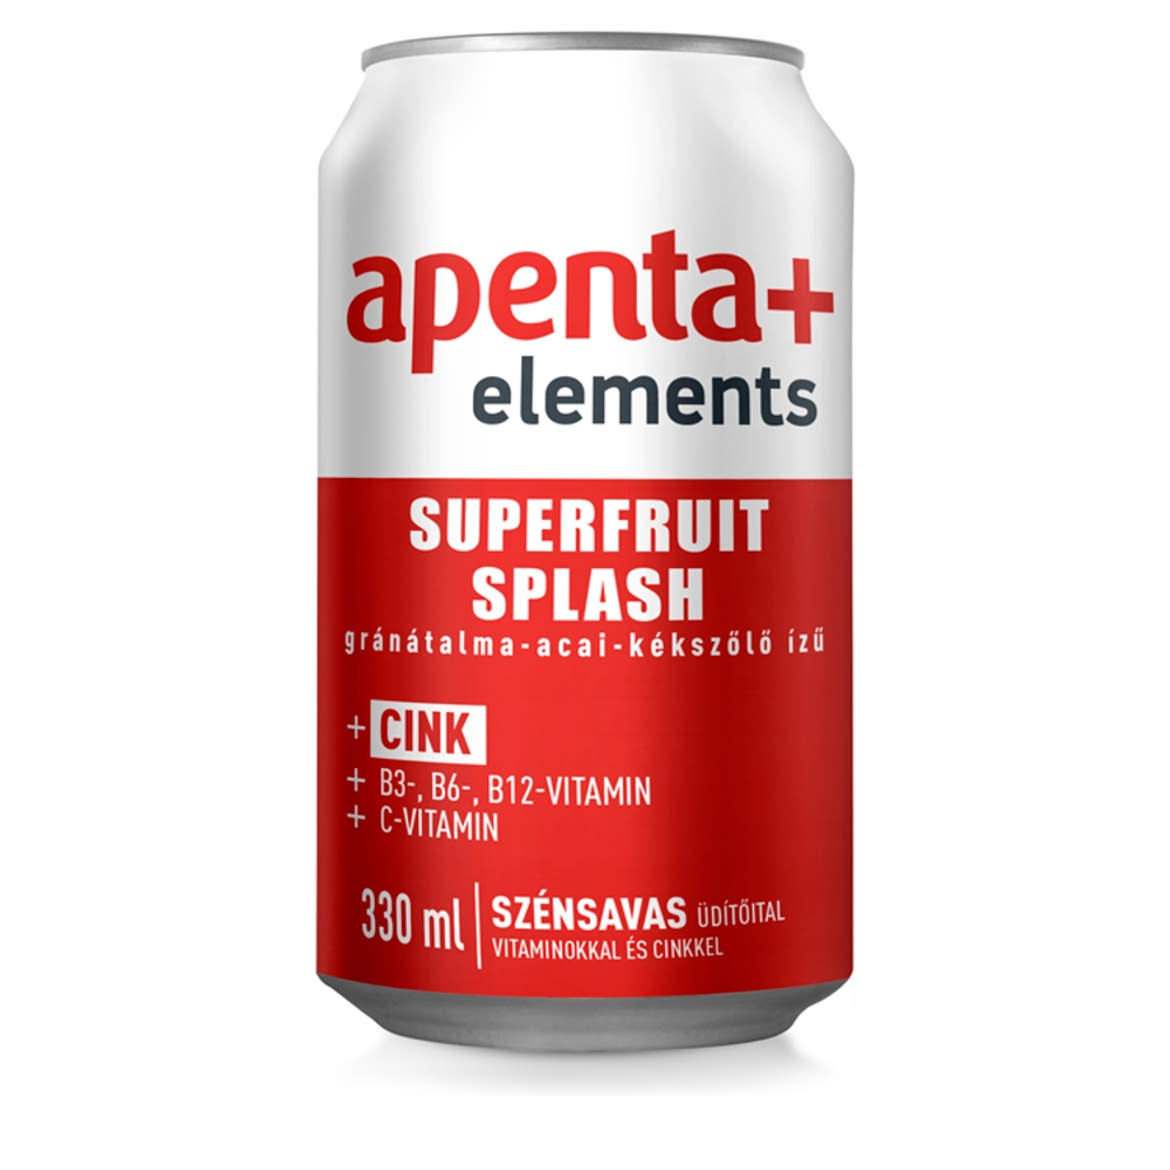 Apenta+ Elements Superfruit Splash gránátalma-acai-kékszőlő ízű szénsavas üdítőital